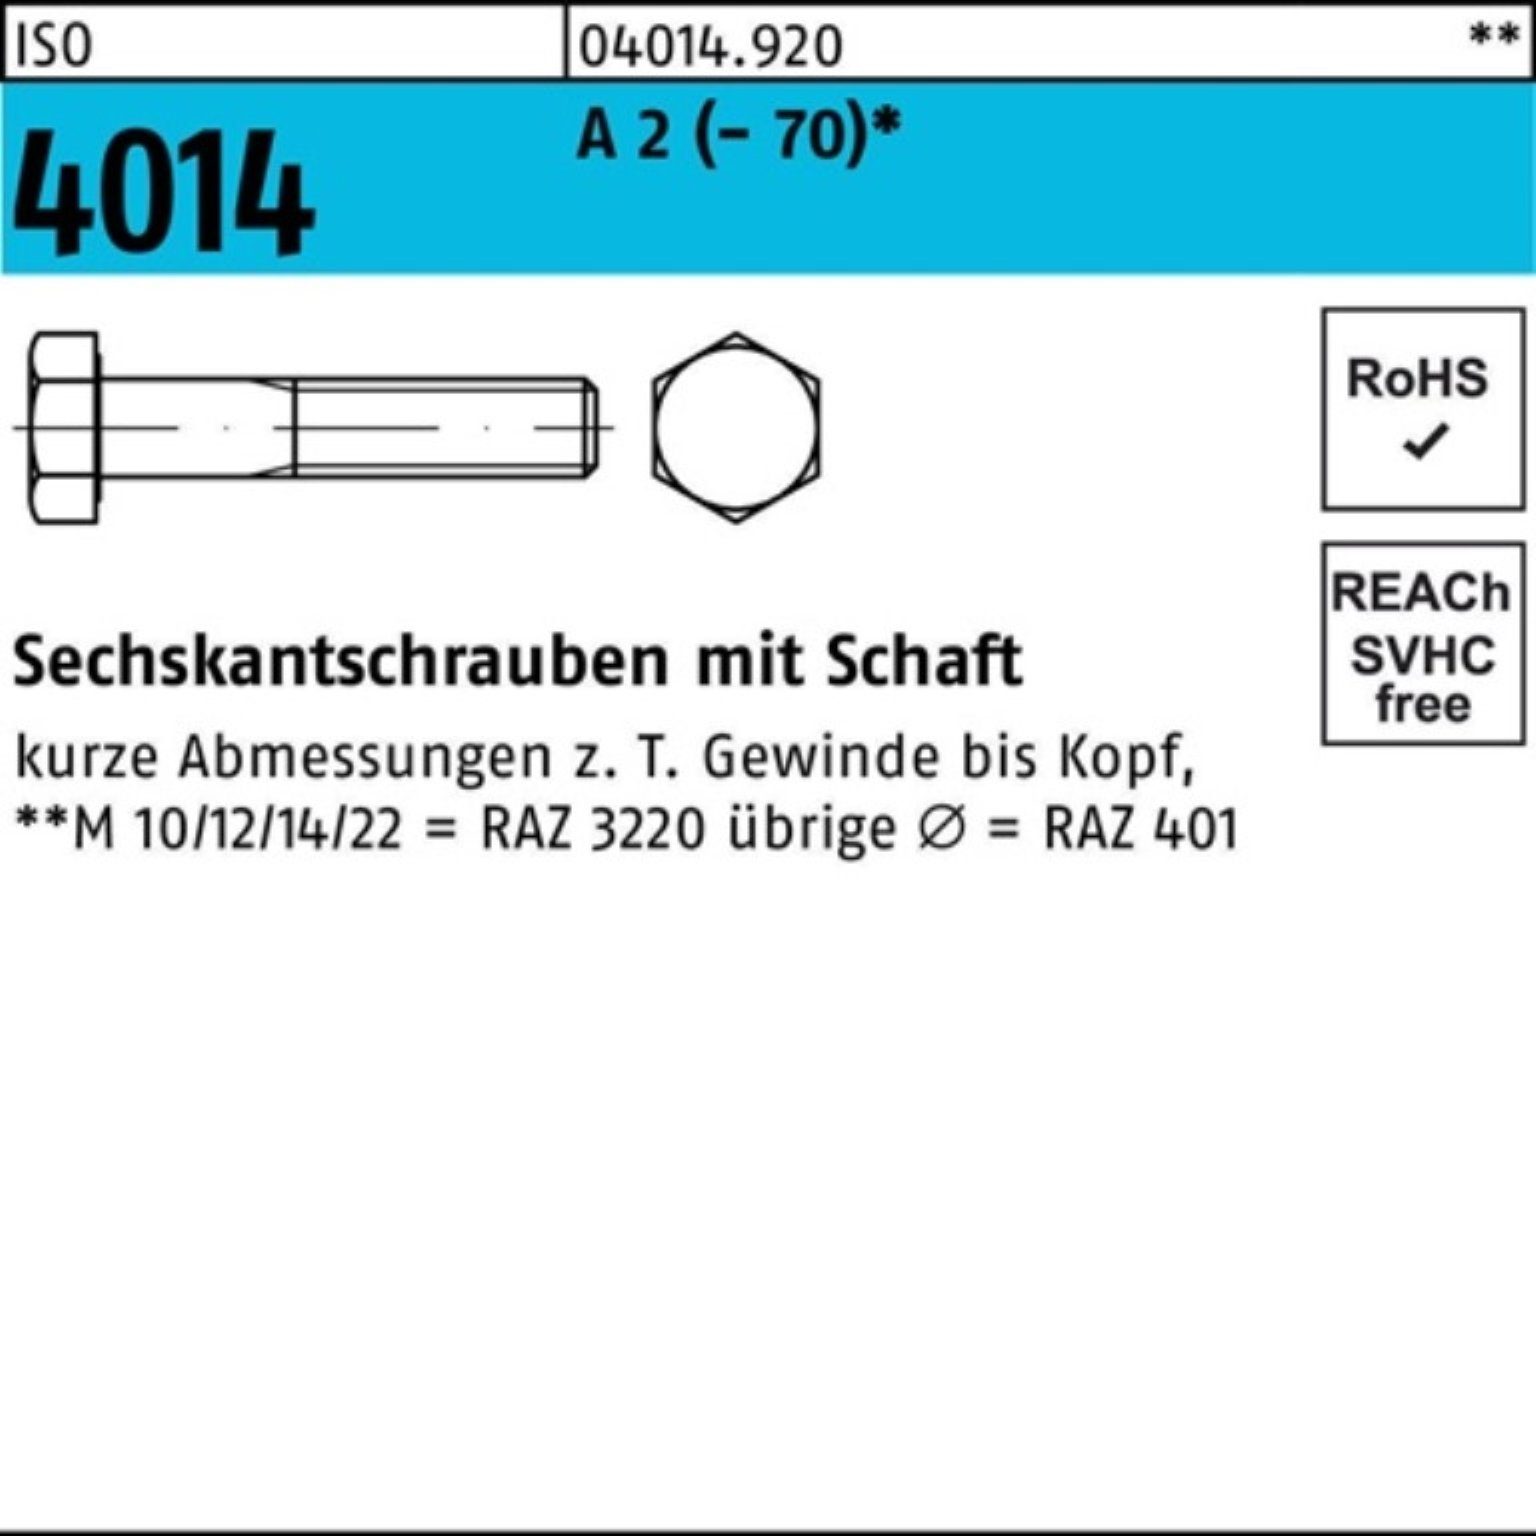 Bufab Sechskantschraube 100er Pack Sechskantschraube ISO 4014 Schaft M12x 90 A 2 (70) 50 St